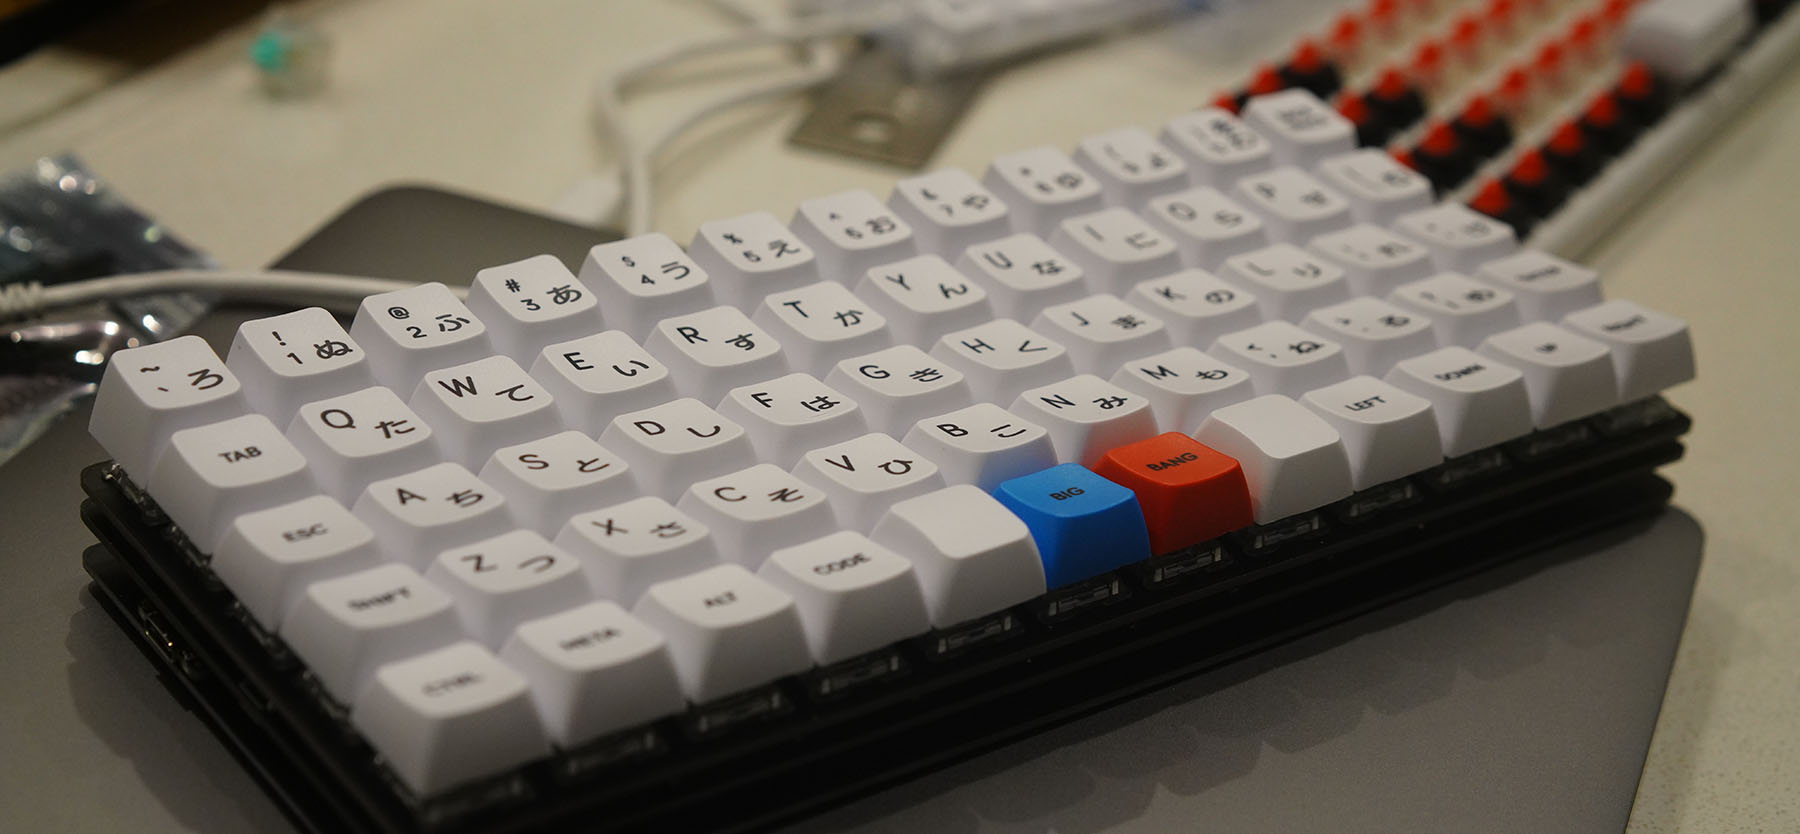 5x12-keyboard.jpg